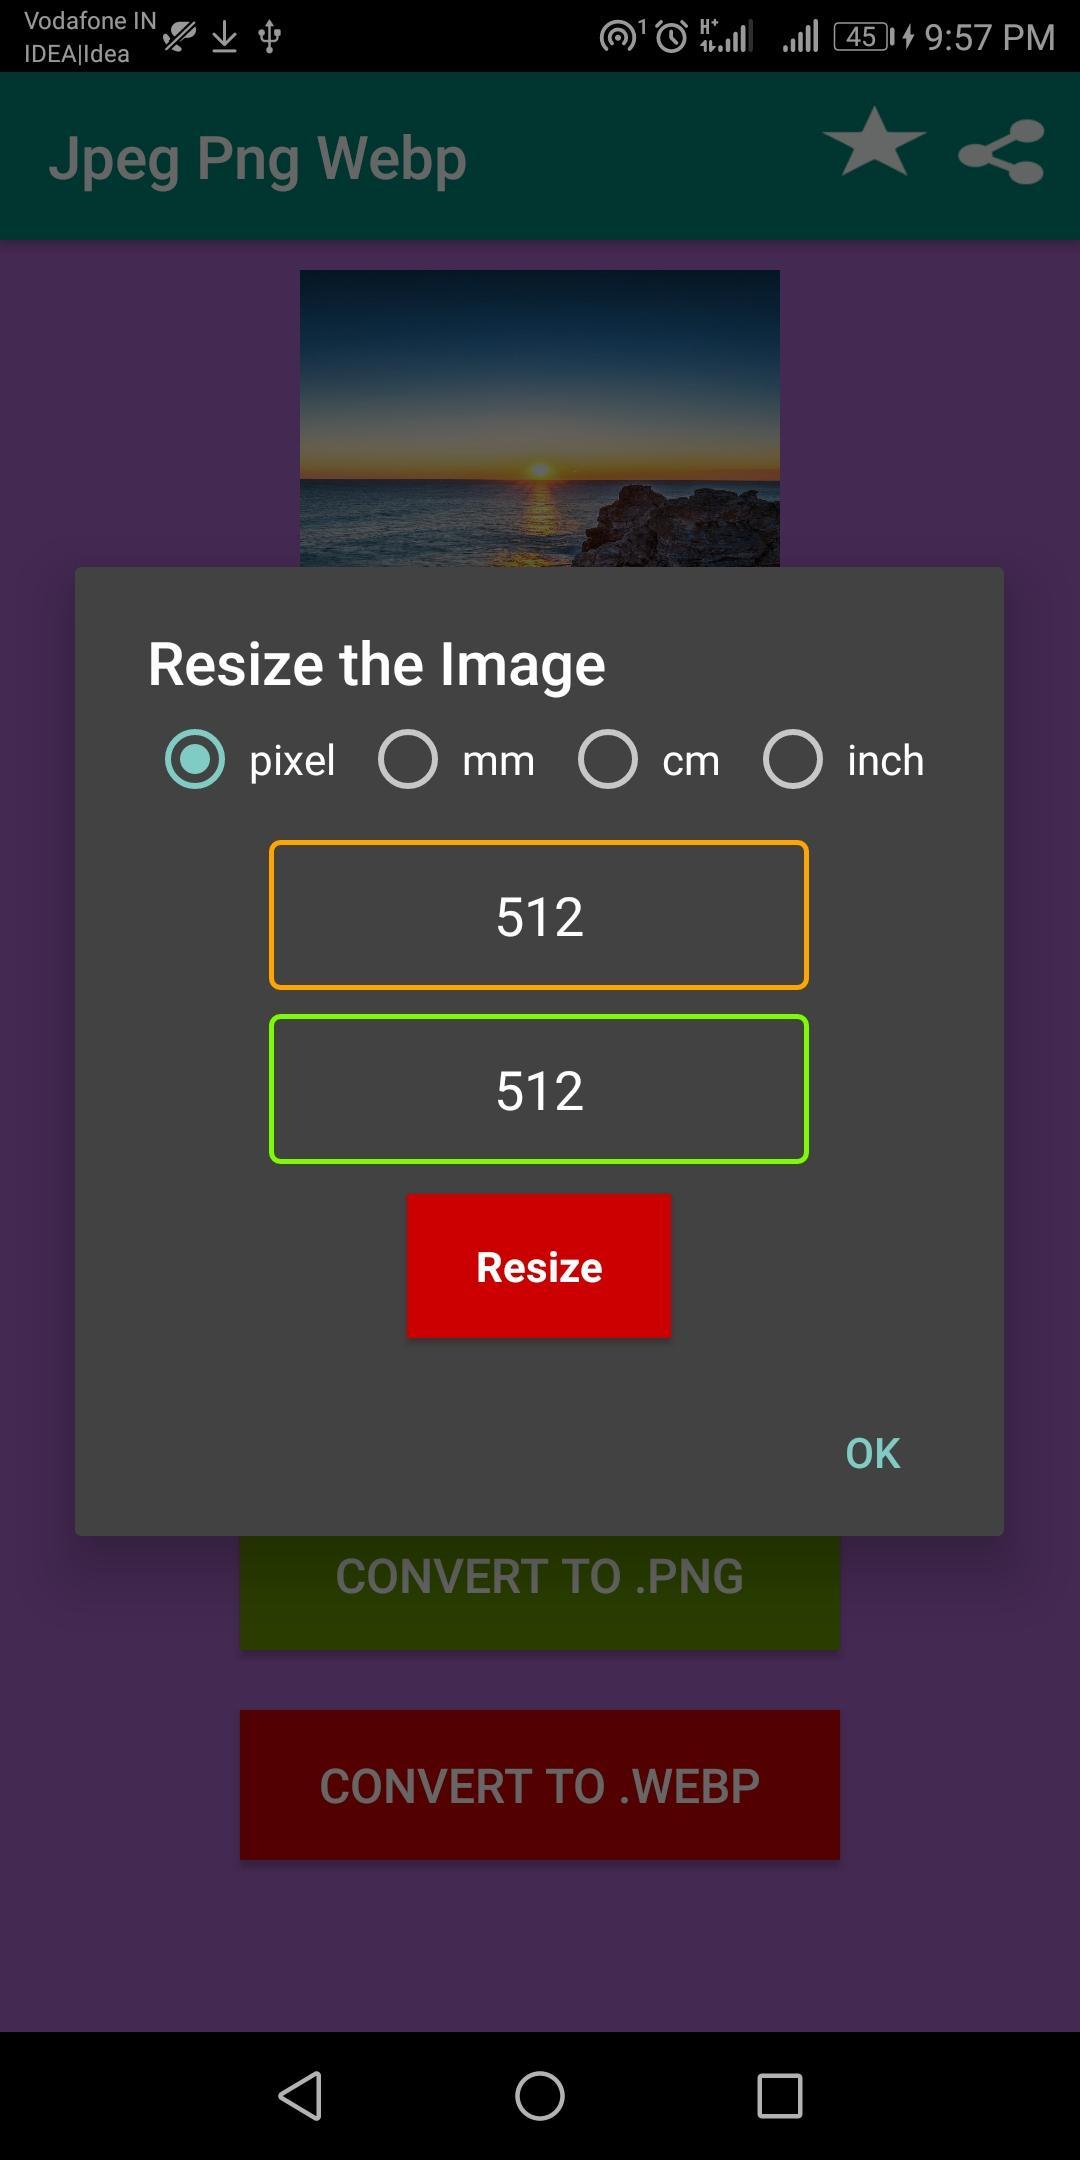 Jpg Png Webp Image Converter Resizer For Android Apk Download